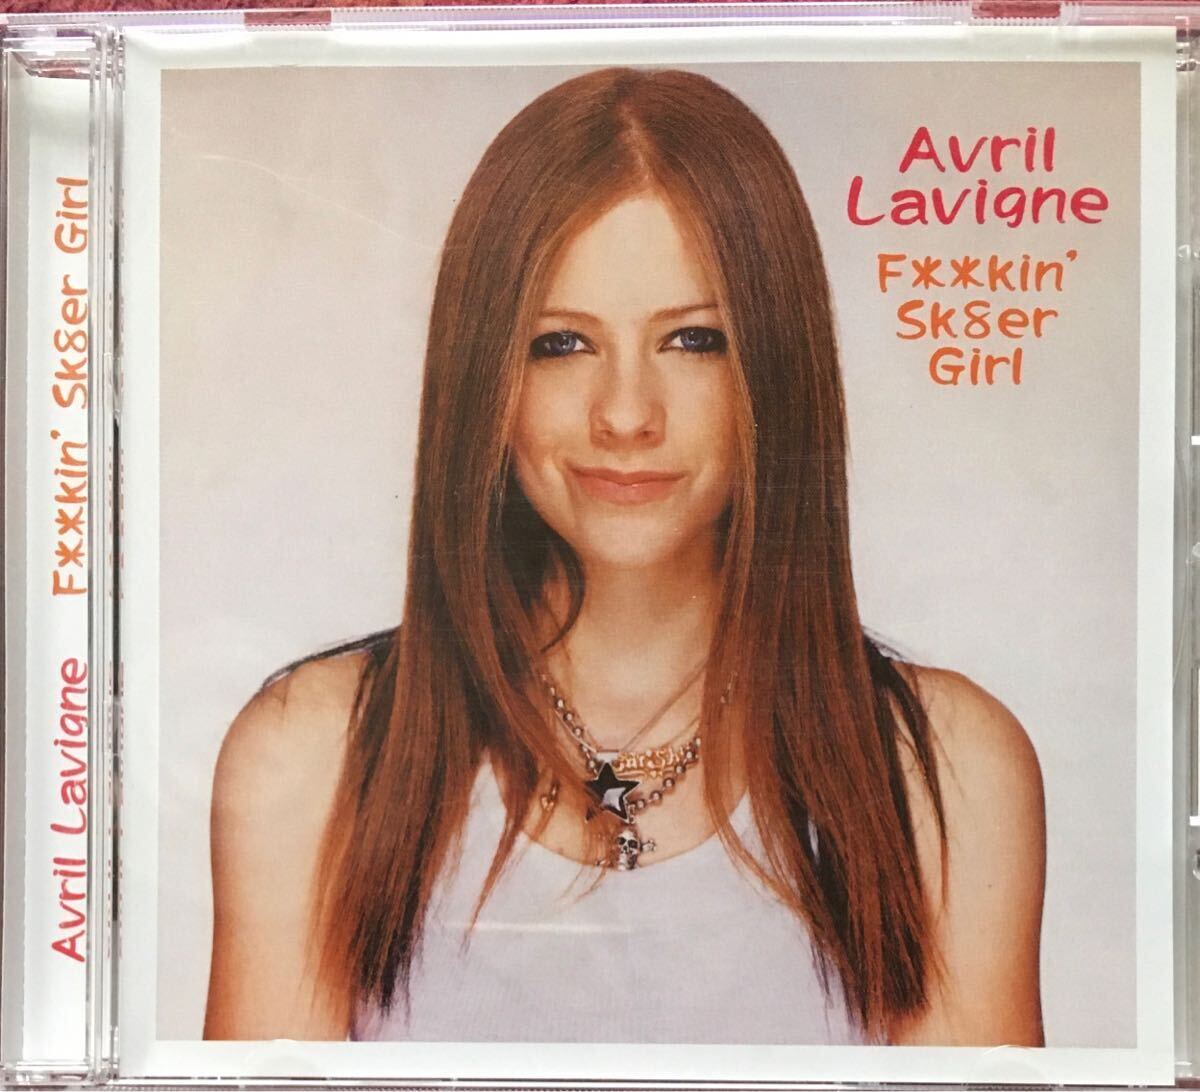 Avril Lavigne[F**kin' Sk8er Girl](2002年BBC音源他)ガールズロック/オルタナ/ギターポップ/パワーポップ/女性シンガーソングライターの画像1